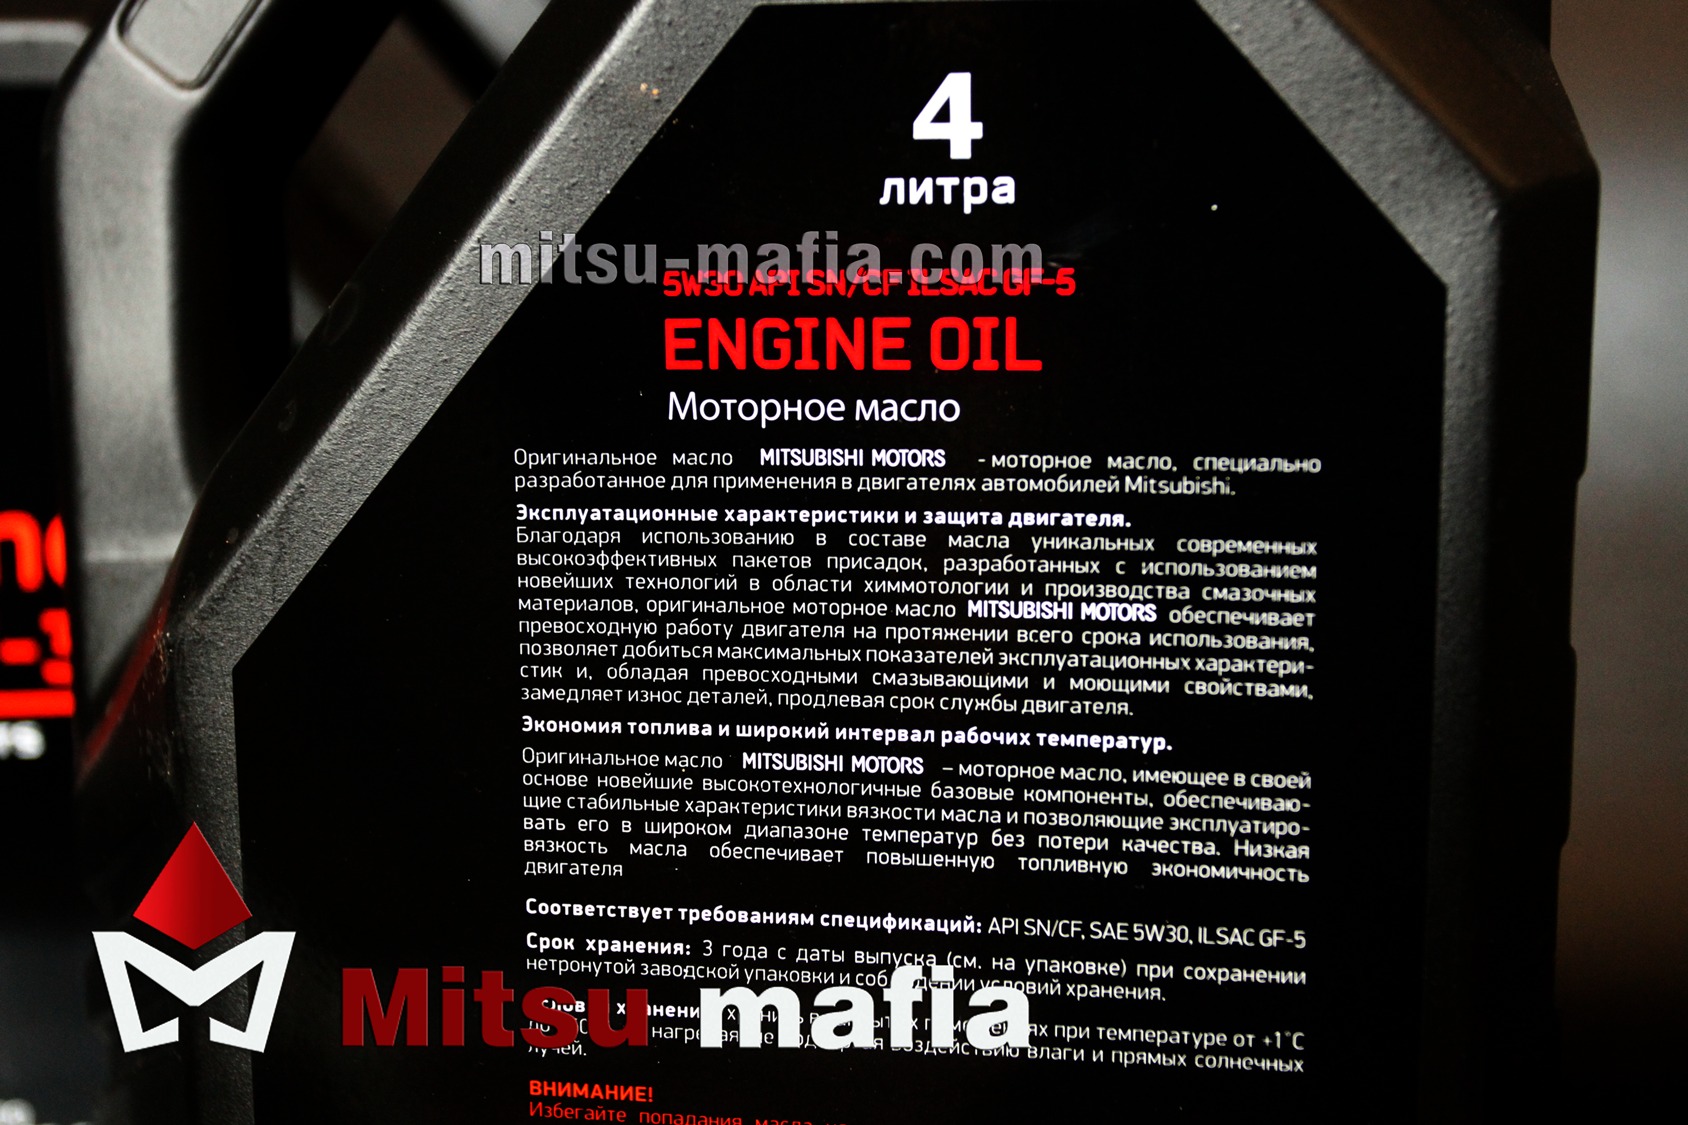  в двигатель 5w30 для Лансер 10 4 литра - Mitsu Mafia